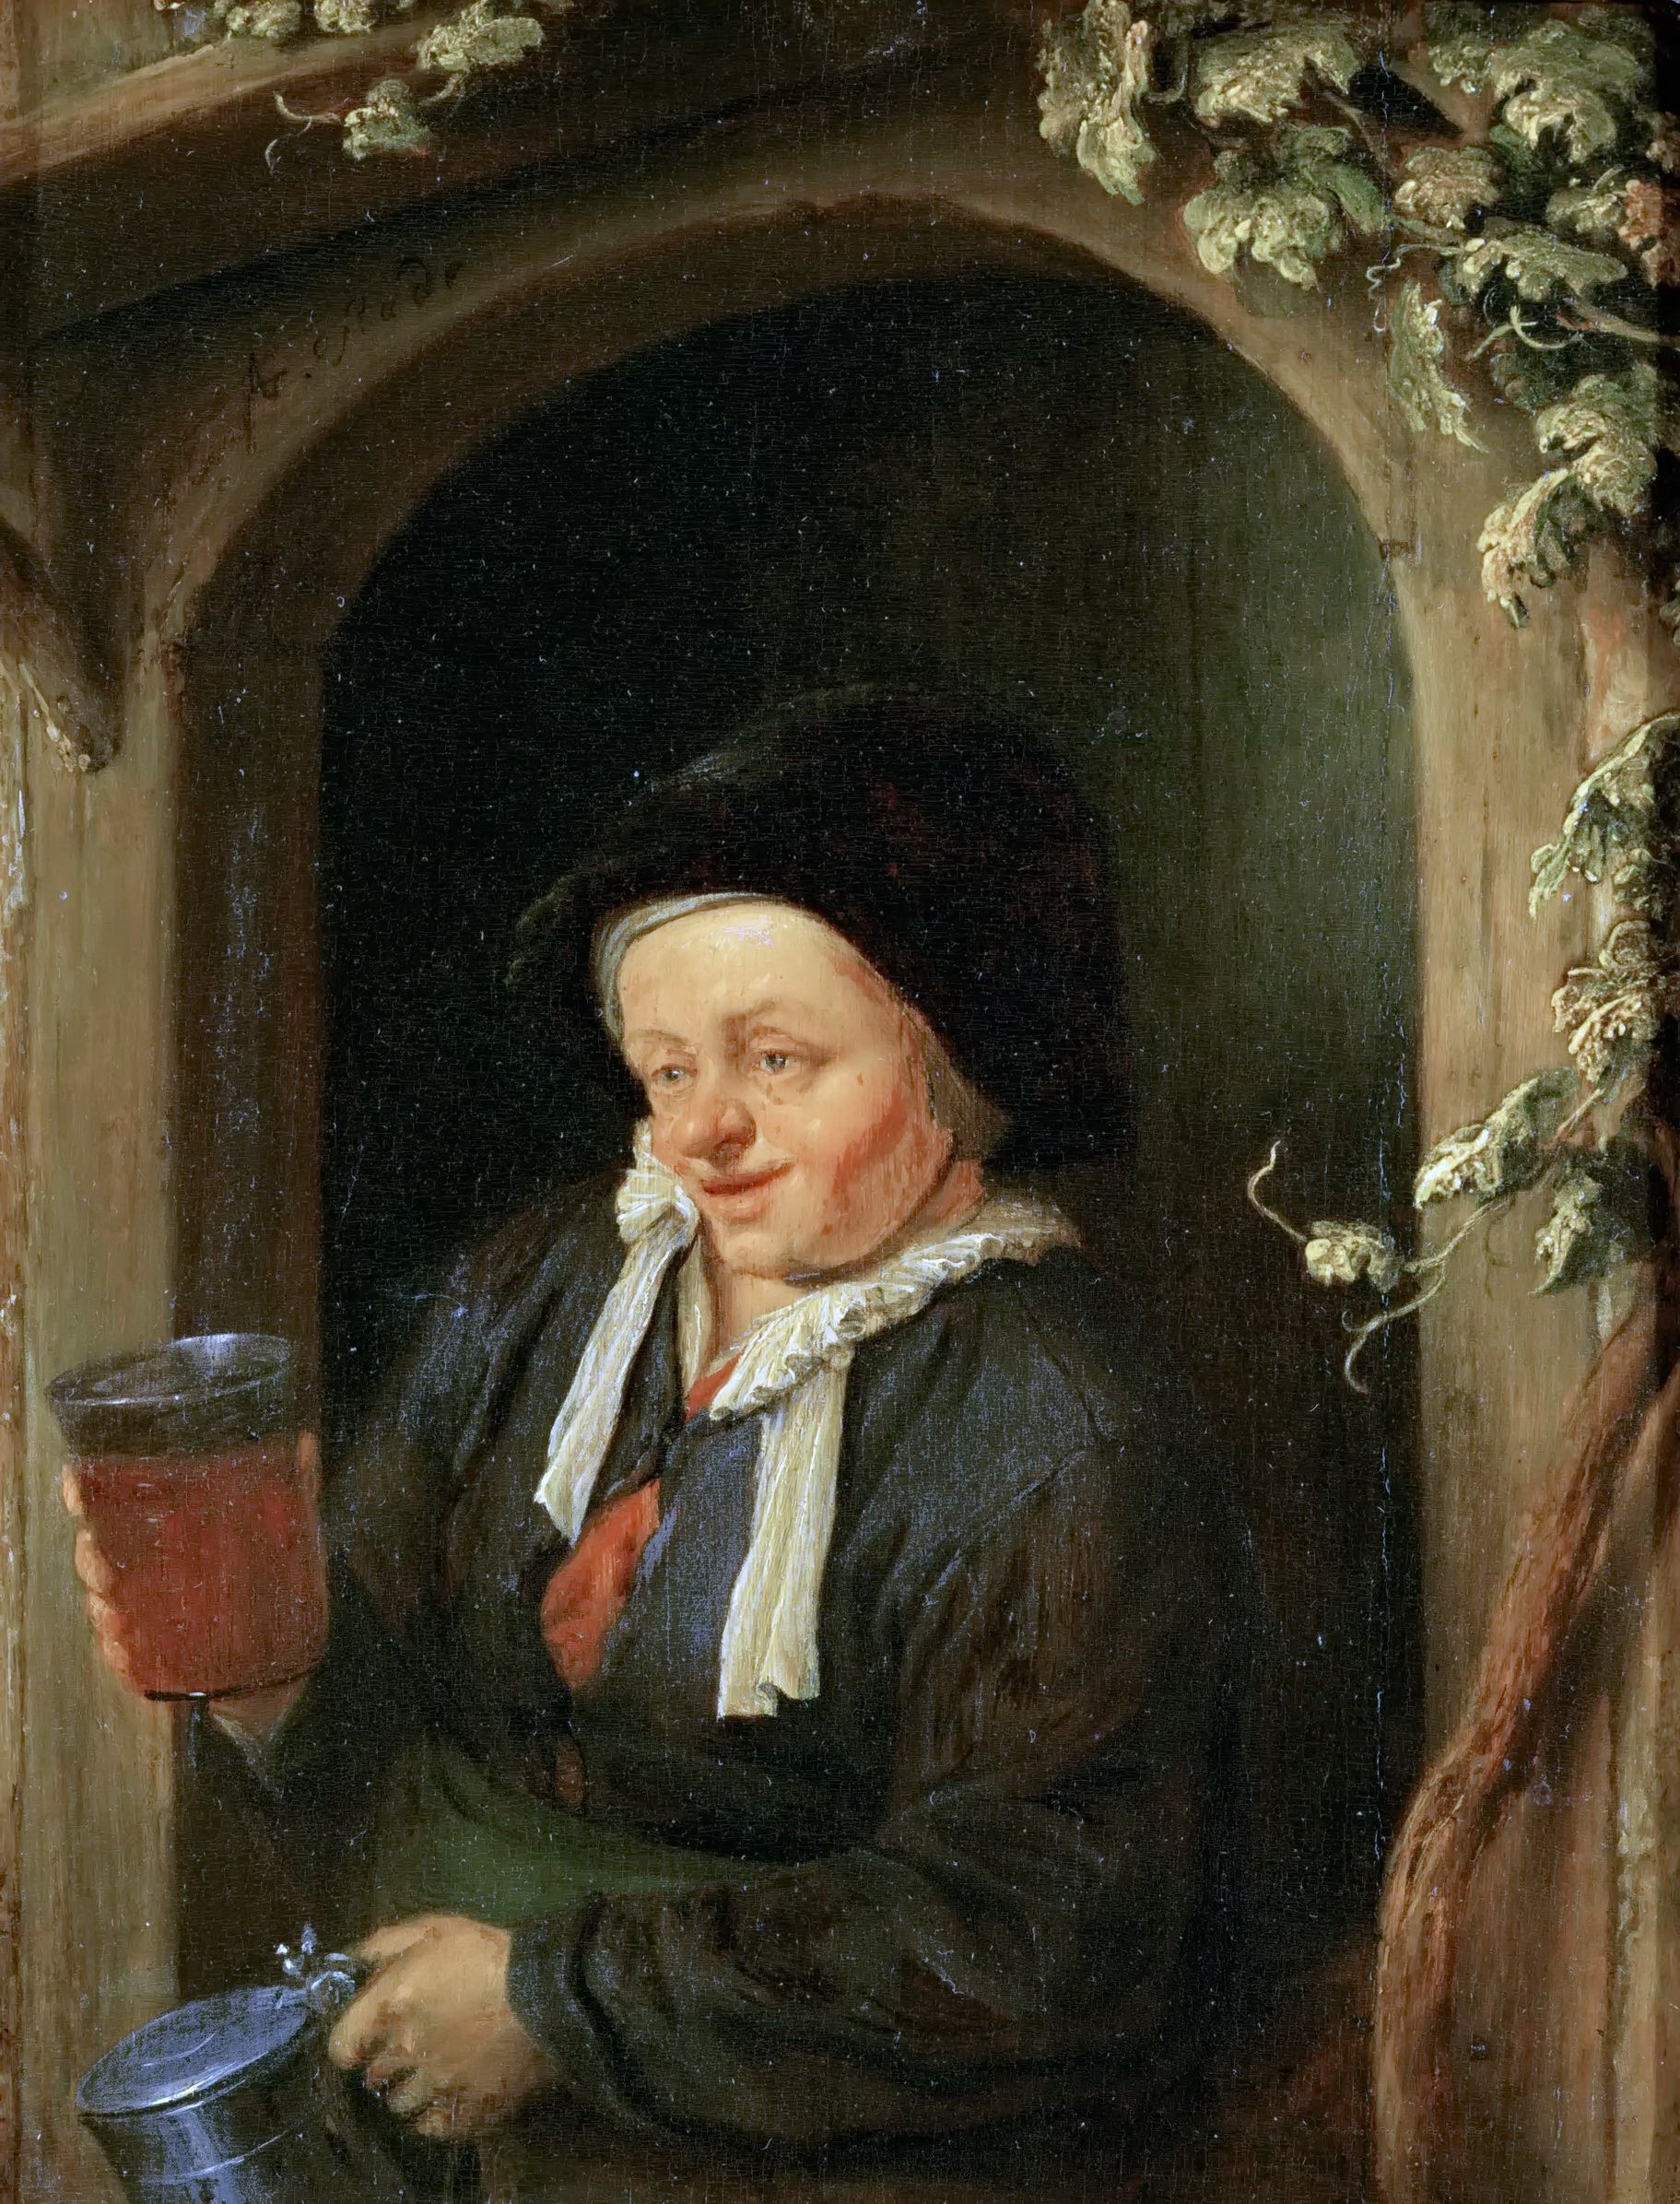 Адриан ван Остаде. "Женщина с бокалом пива в окне". Около 1665. Музей истории искусств, Вена.